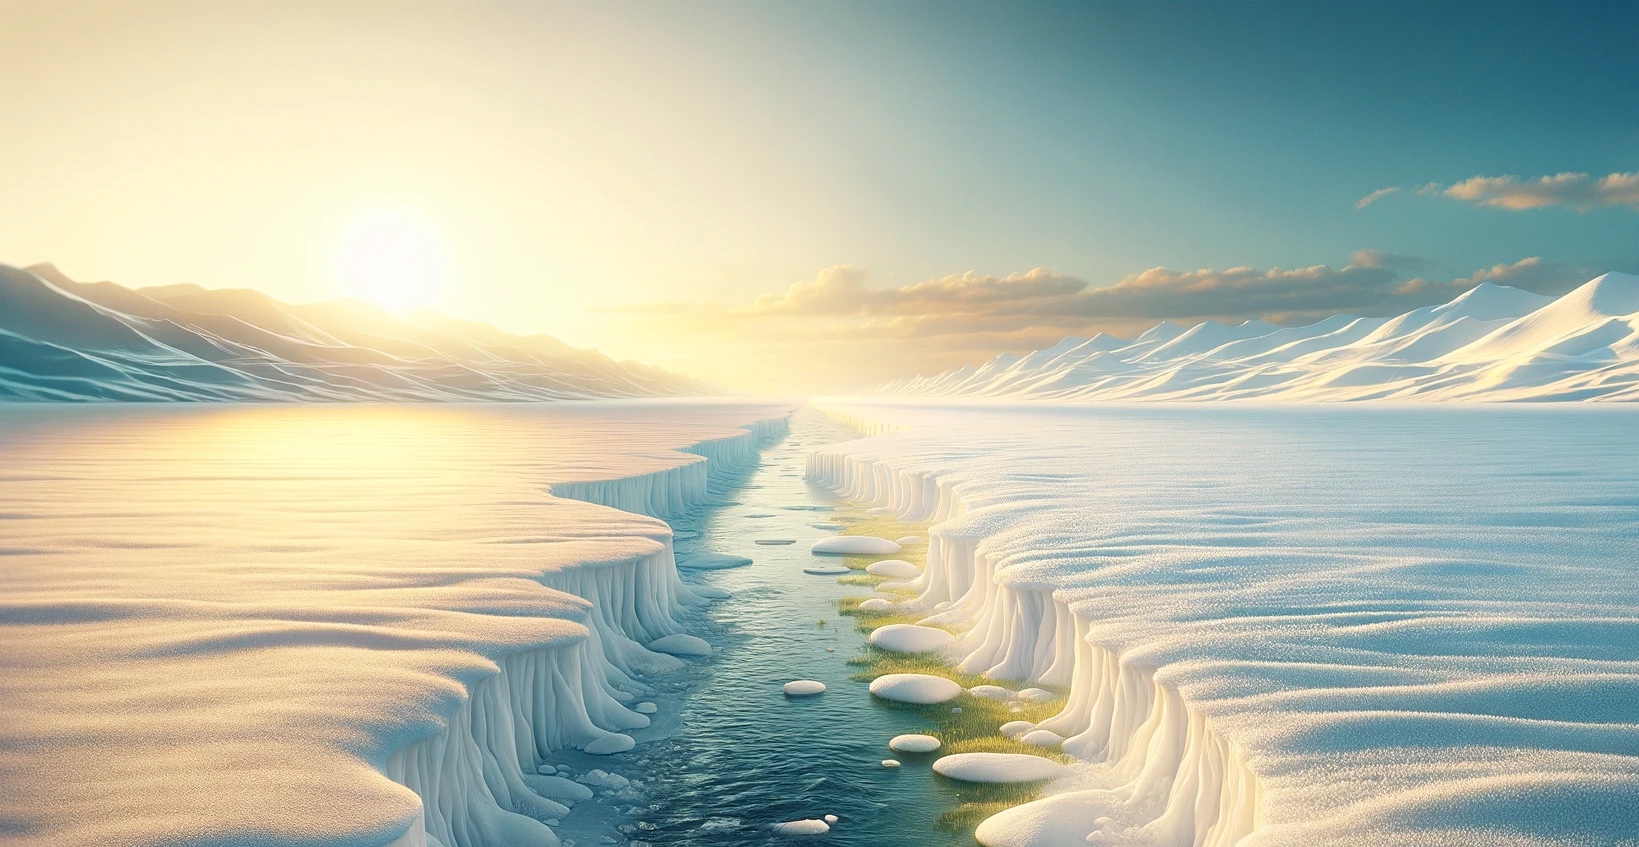 Le volume d'air froid disponible dans l'atmosphère diminue chaque année. © Pexels, Pixabay